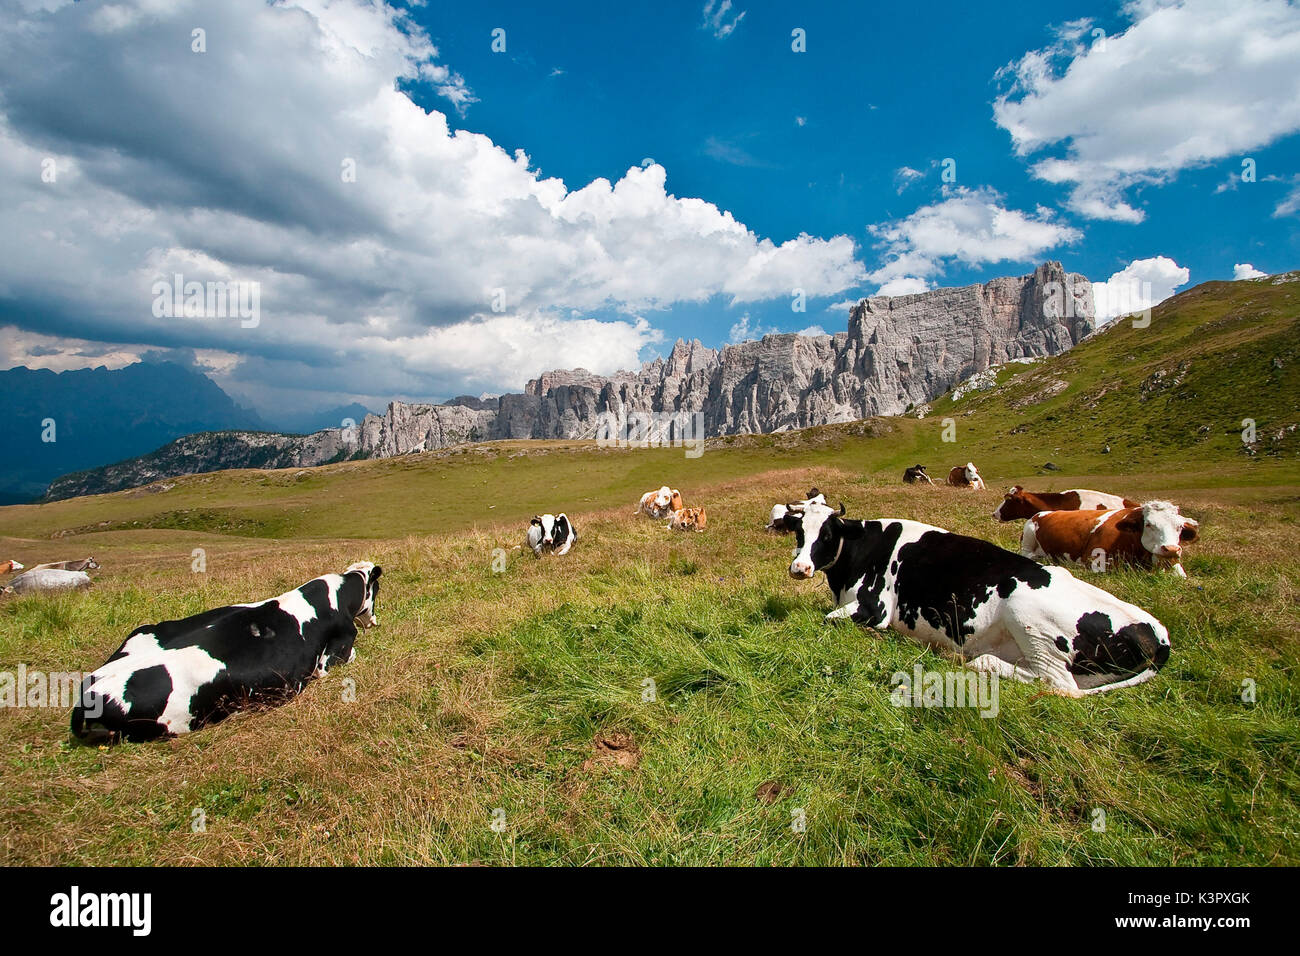 Quelques vaches Frisonnes reposant par Col Giau. Frisons Holstein (souvent abrégé comme holsteins) sont une race de bovins que l'on appelle aujourd'hui la plus forte proportion de la production des animaux laitiers - Dolomites, Trentin-Haut-Adige Italie Europe Banque D'Images